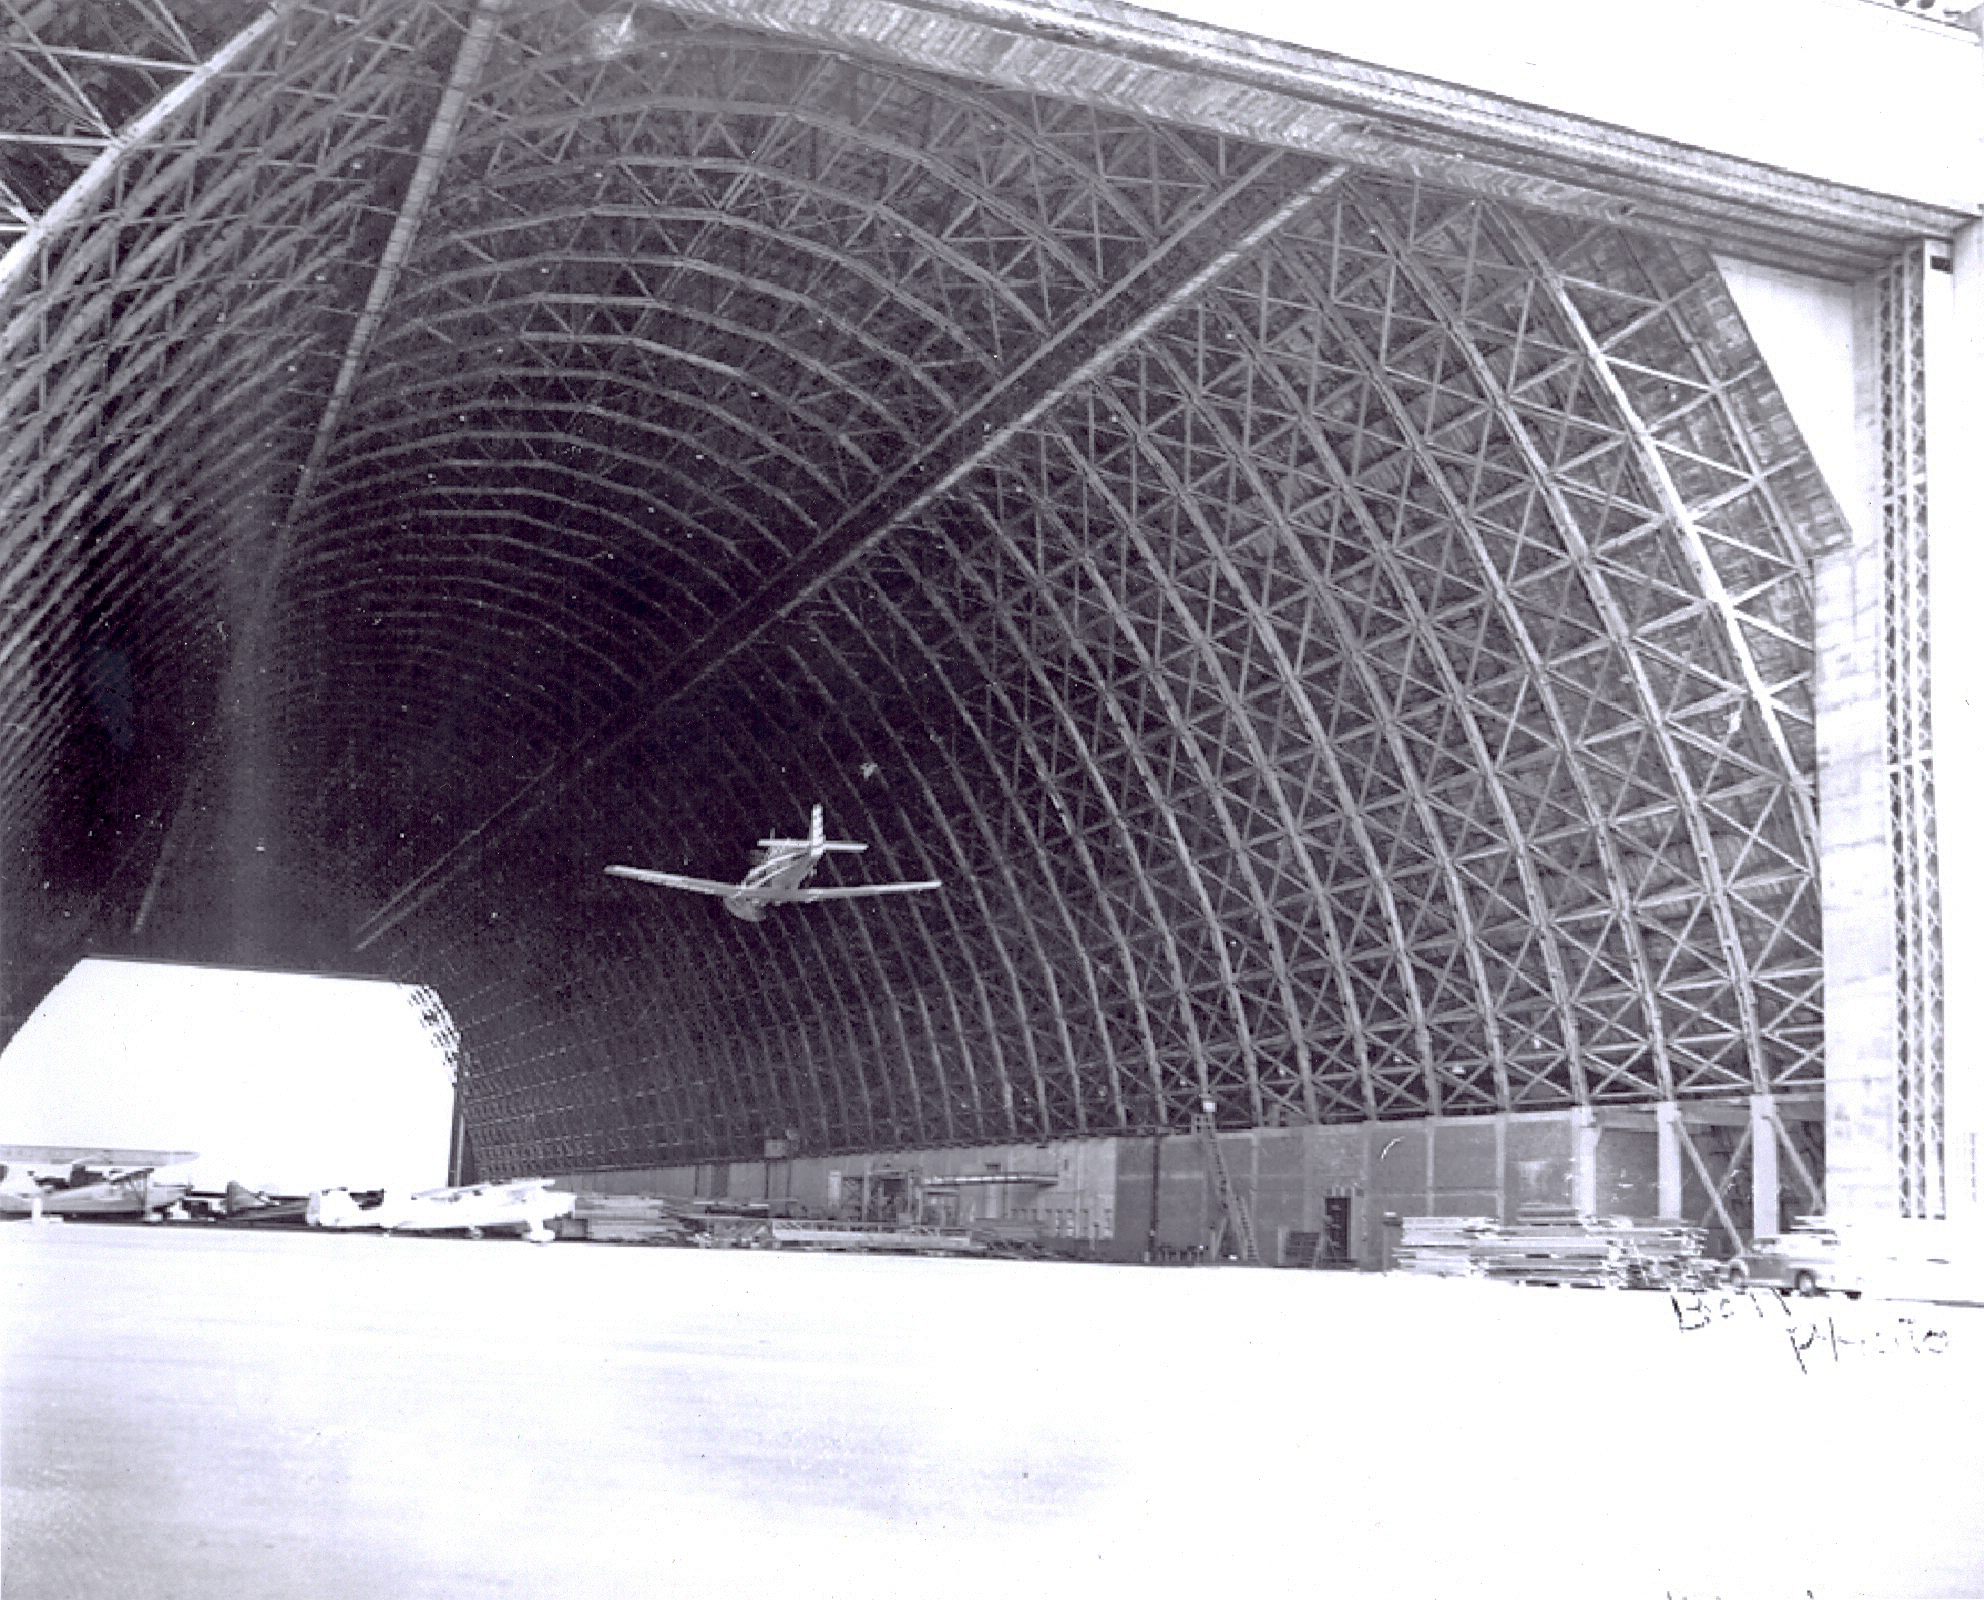 Airplane flying through open hangar bay at Naval Air Station Tillamook